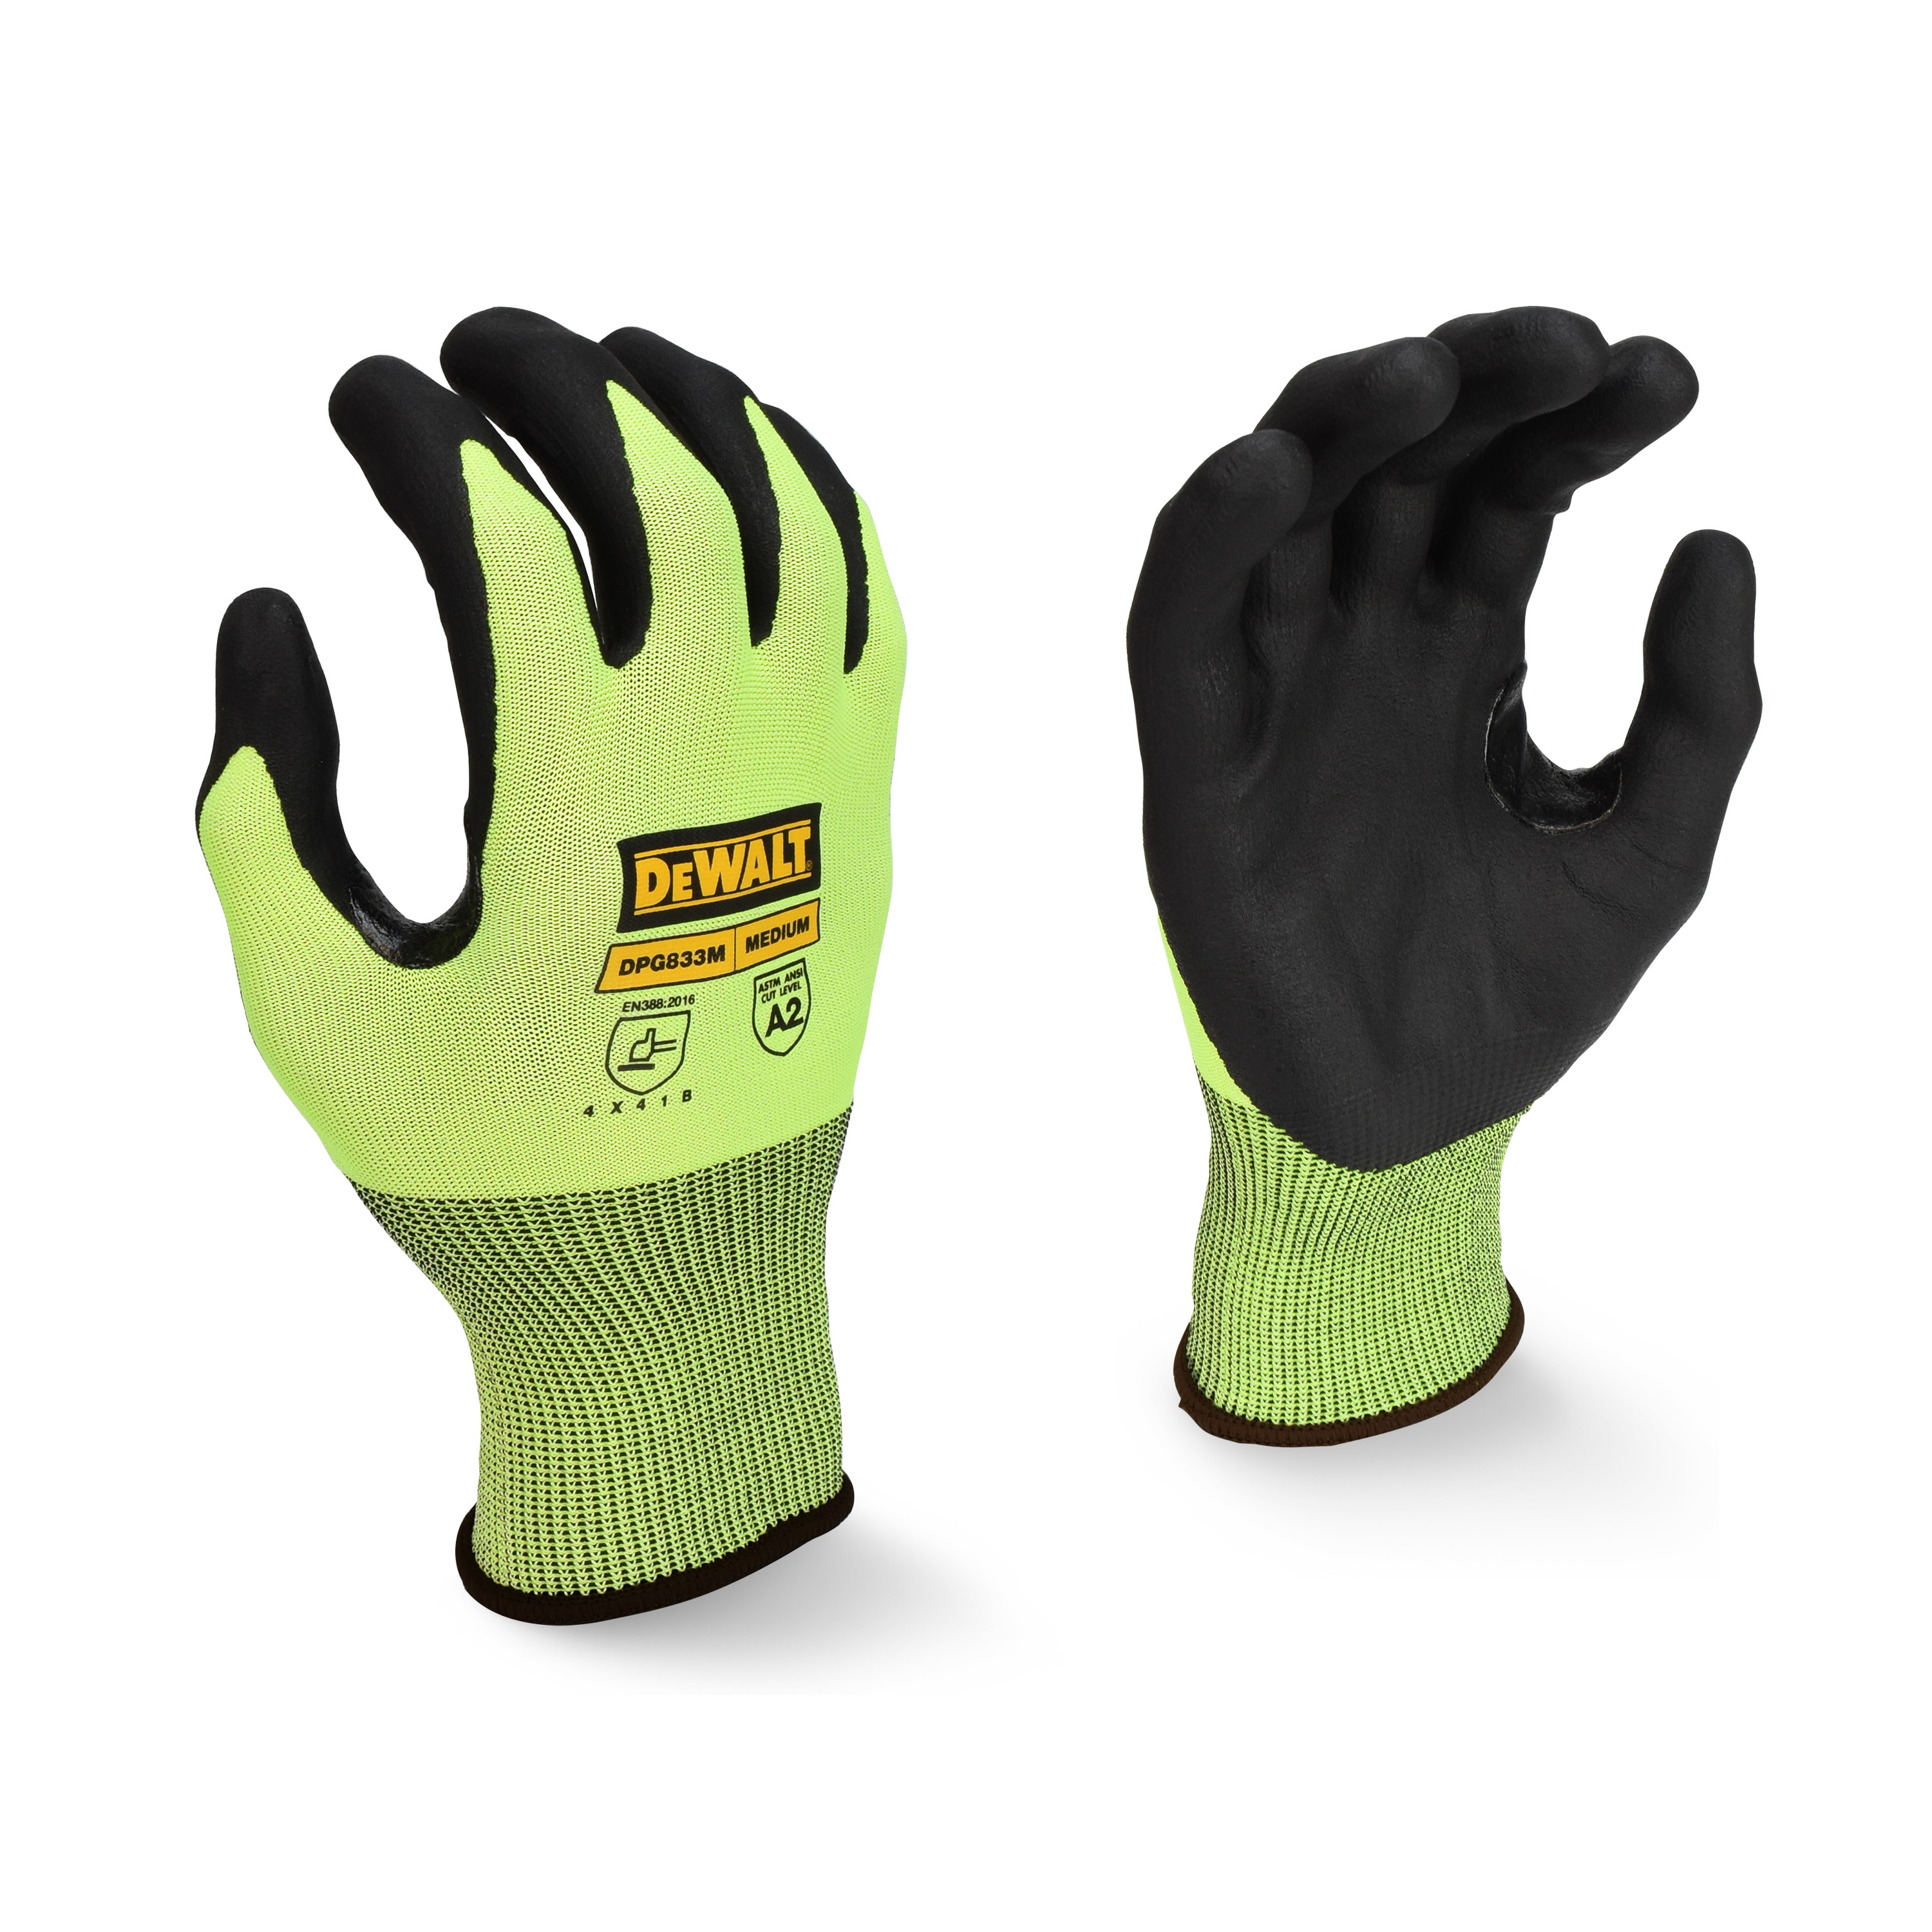 DPG833 Hi-Vis HPPE Cut Touchscreen Glove - Size M